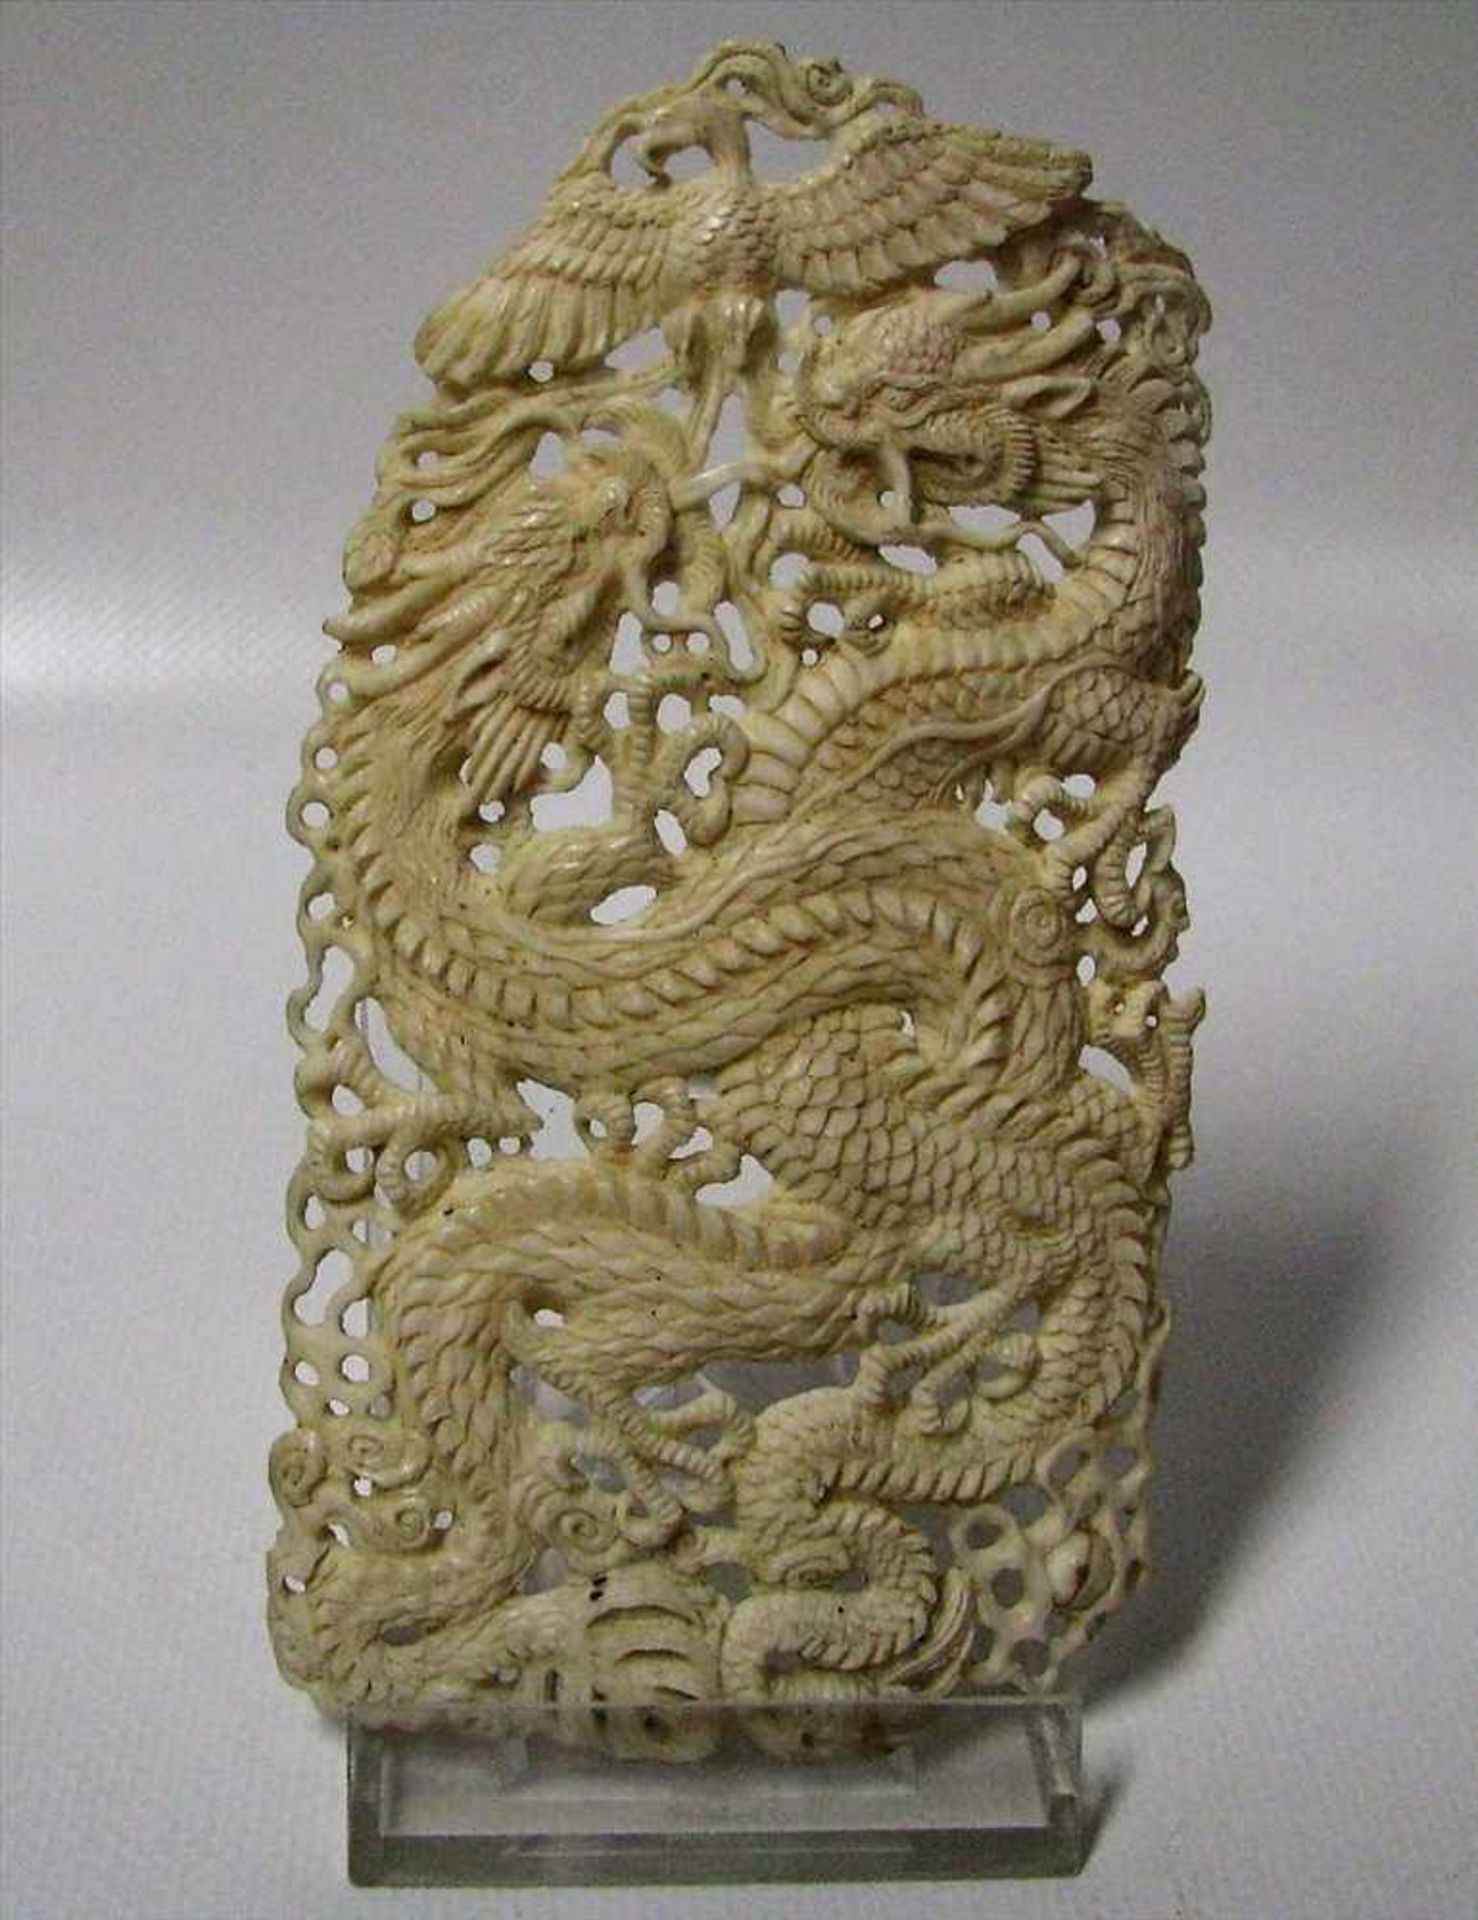 Schnitzerei mit Drachendarstellung, China, um 1900, Elfenbein fein beschnitzt, durchbrochen